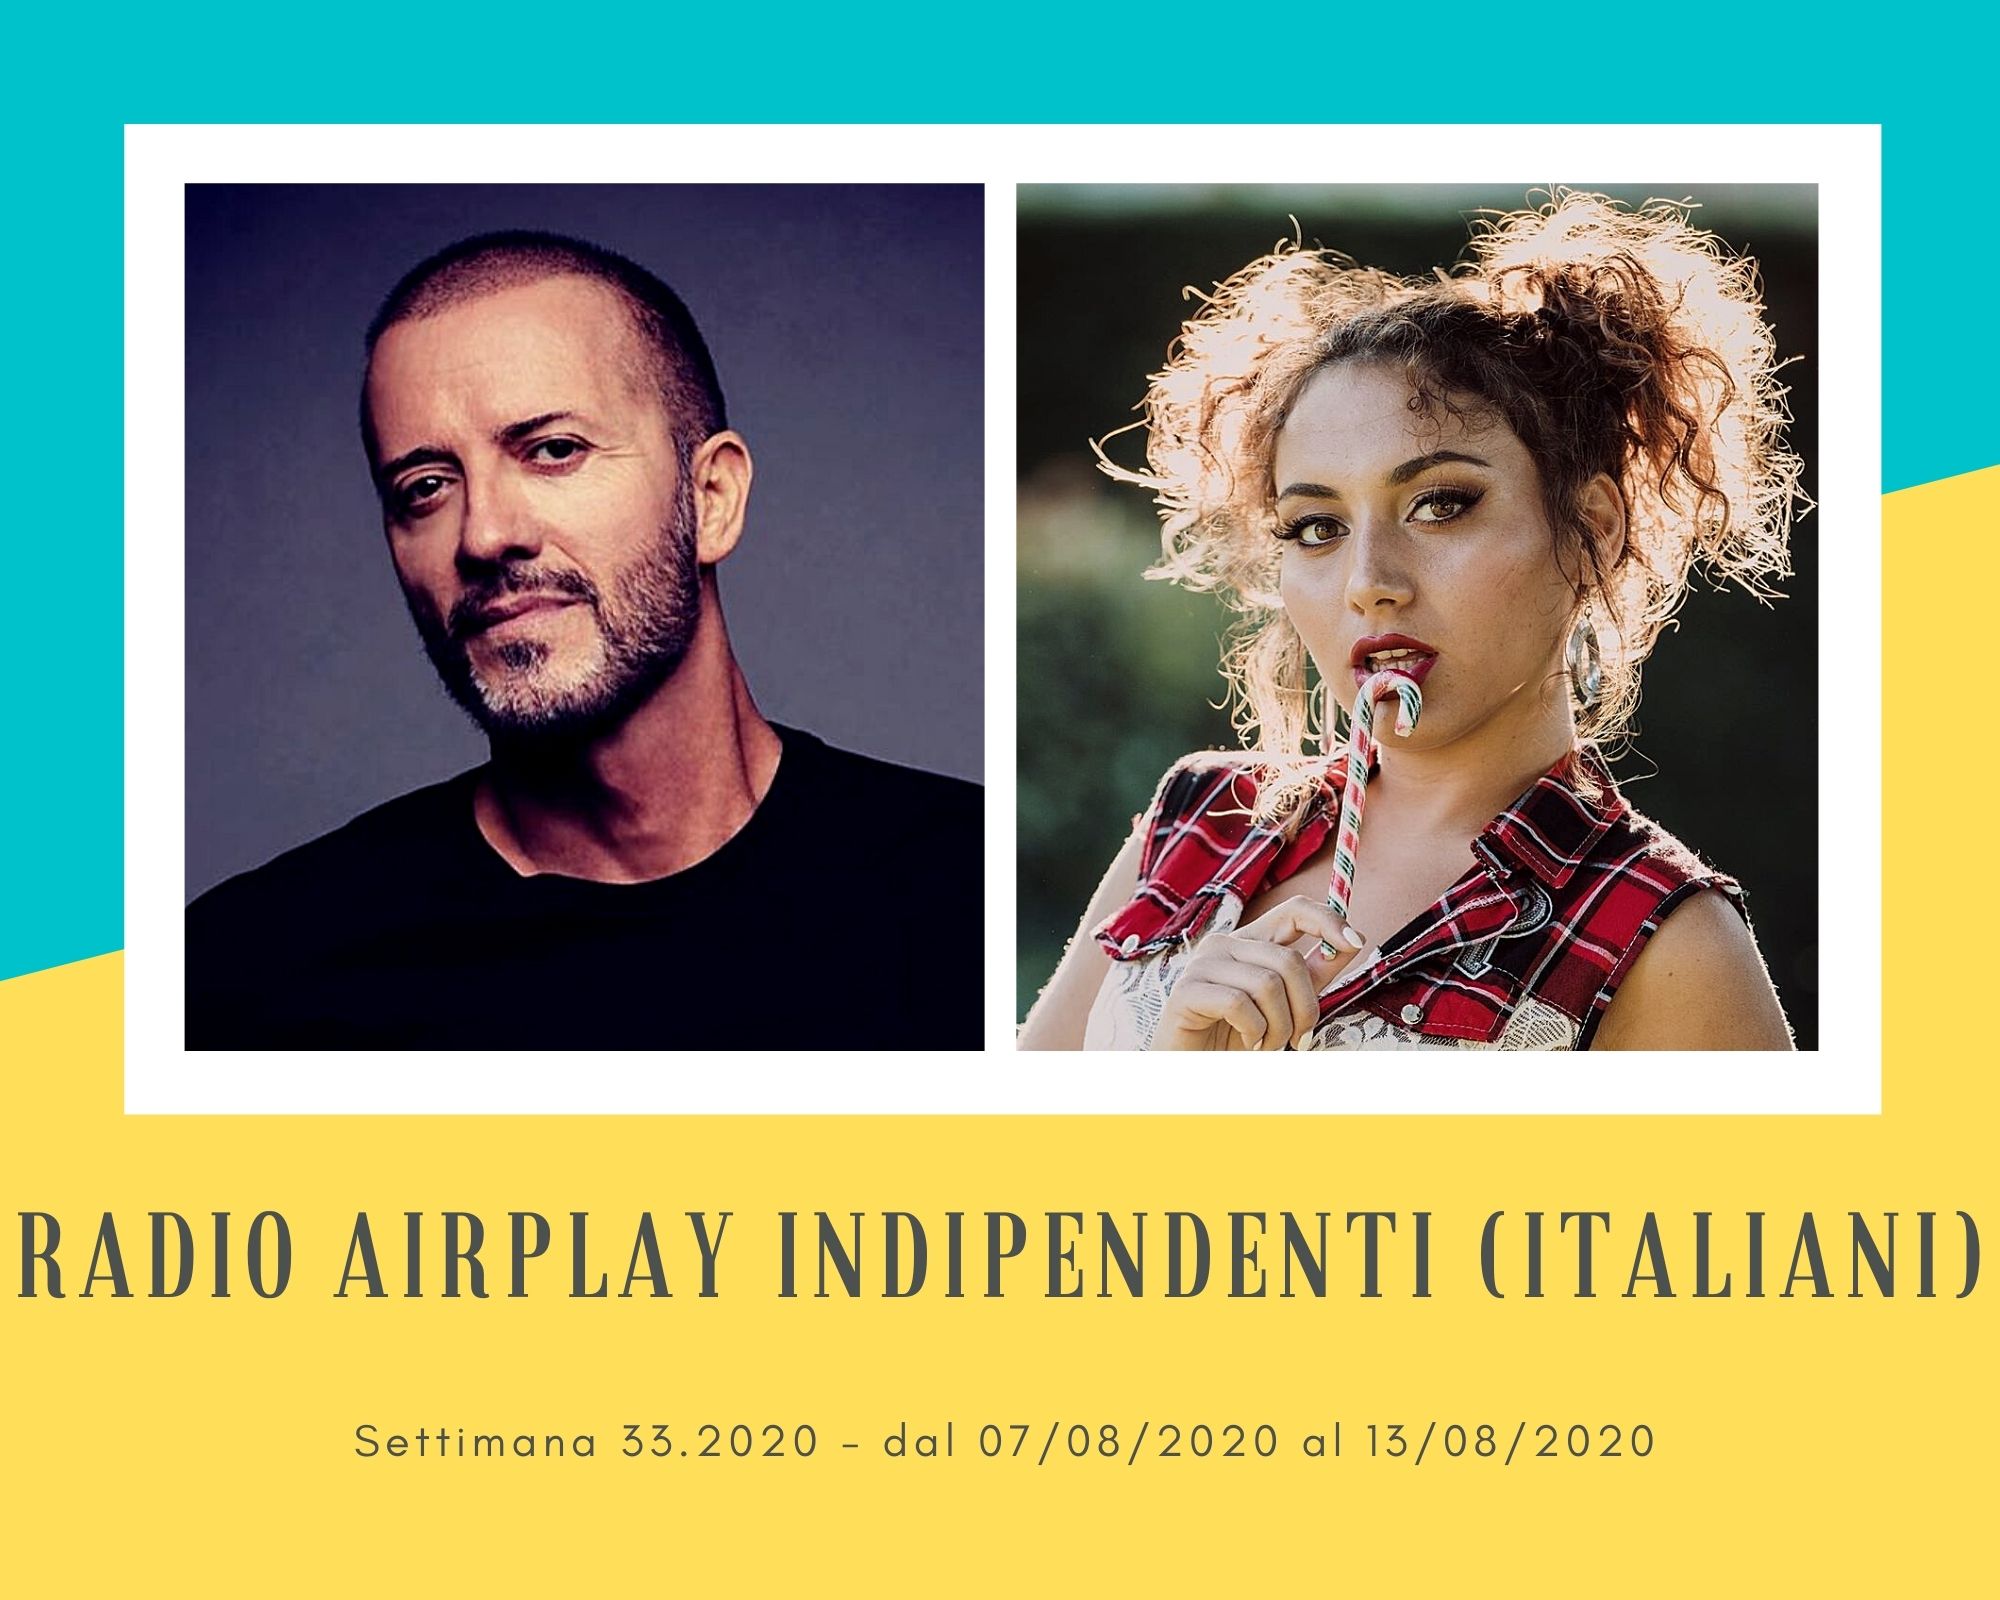 Classifica Radio Airplay Indipendenti Italiani, week 33: Raf saldo in vetta, Grace si rivela, Mietta e Raphael Gualazzi risalgono